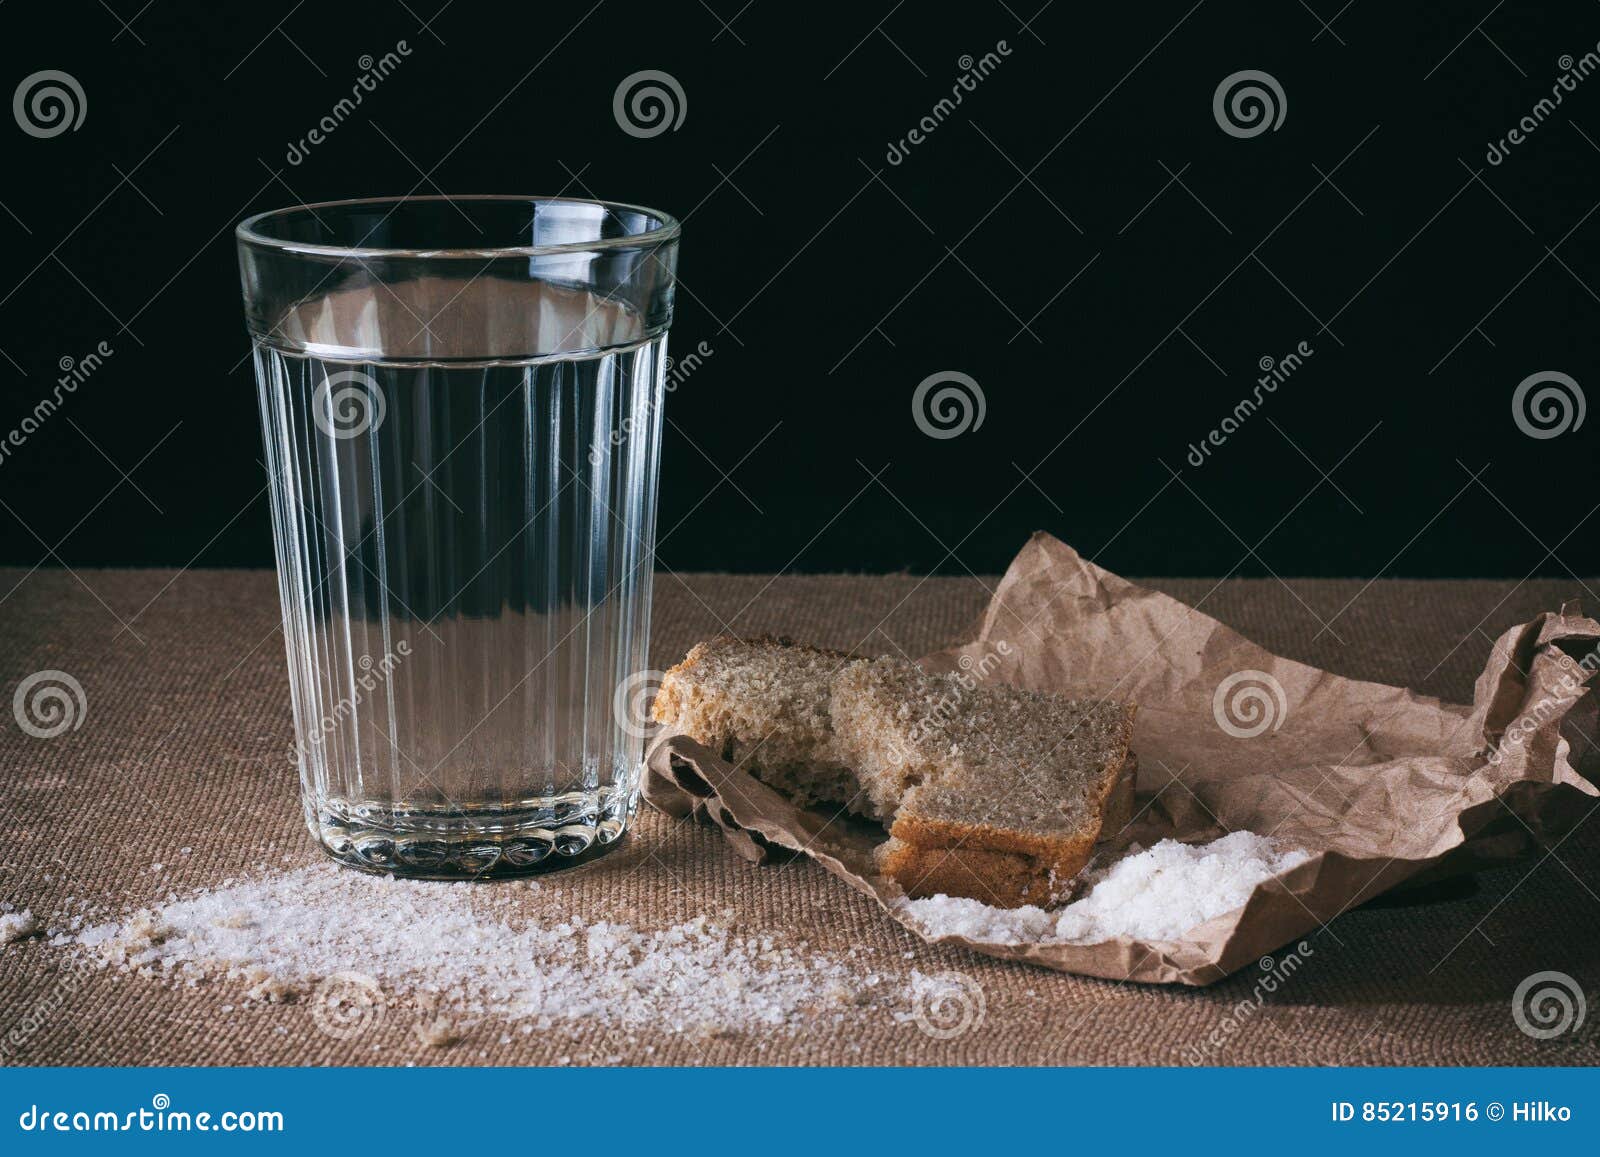 Ставят стакан воды и хлеб. Хлеб соль вода. Хлеб и вода. Стакан воды с хлебом. Черный хлеб и вода.